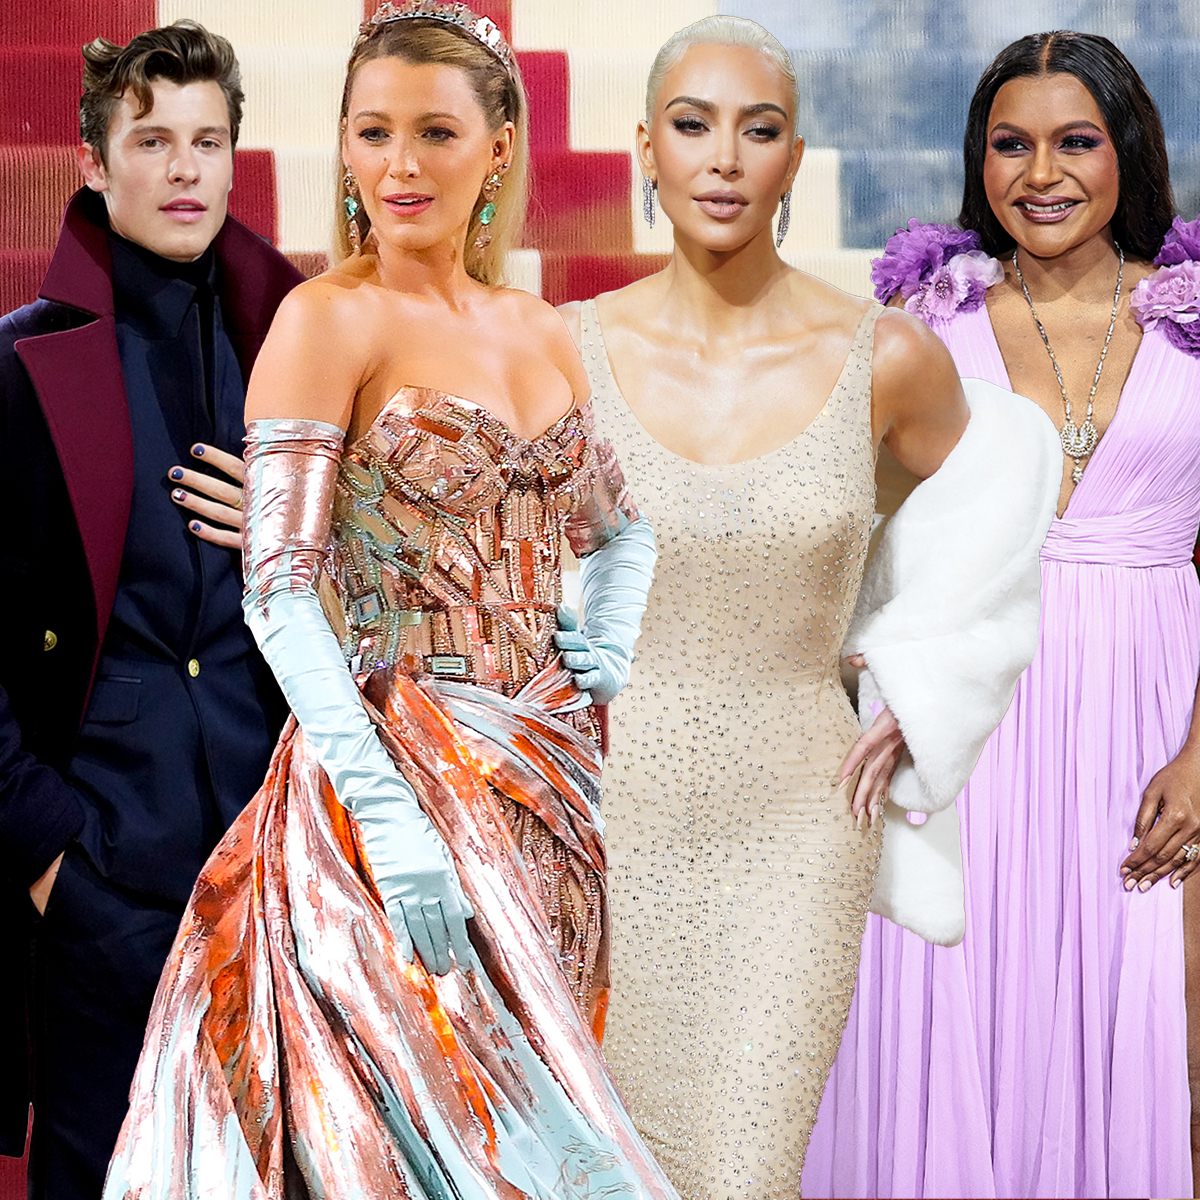 Met Gala 2022: what did Kim Kardashian, Blake Lively and Avani wear?